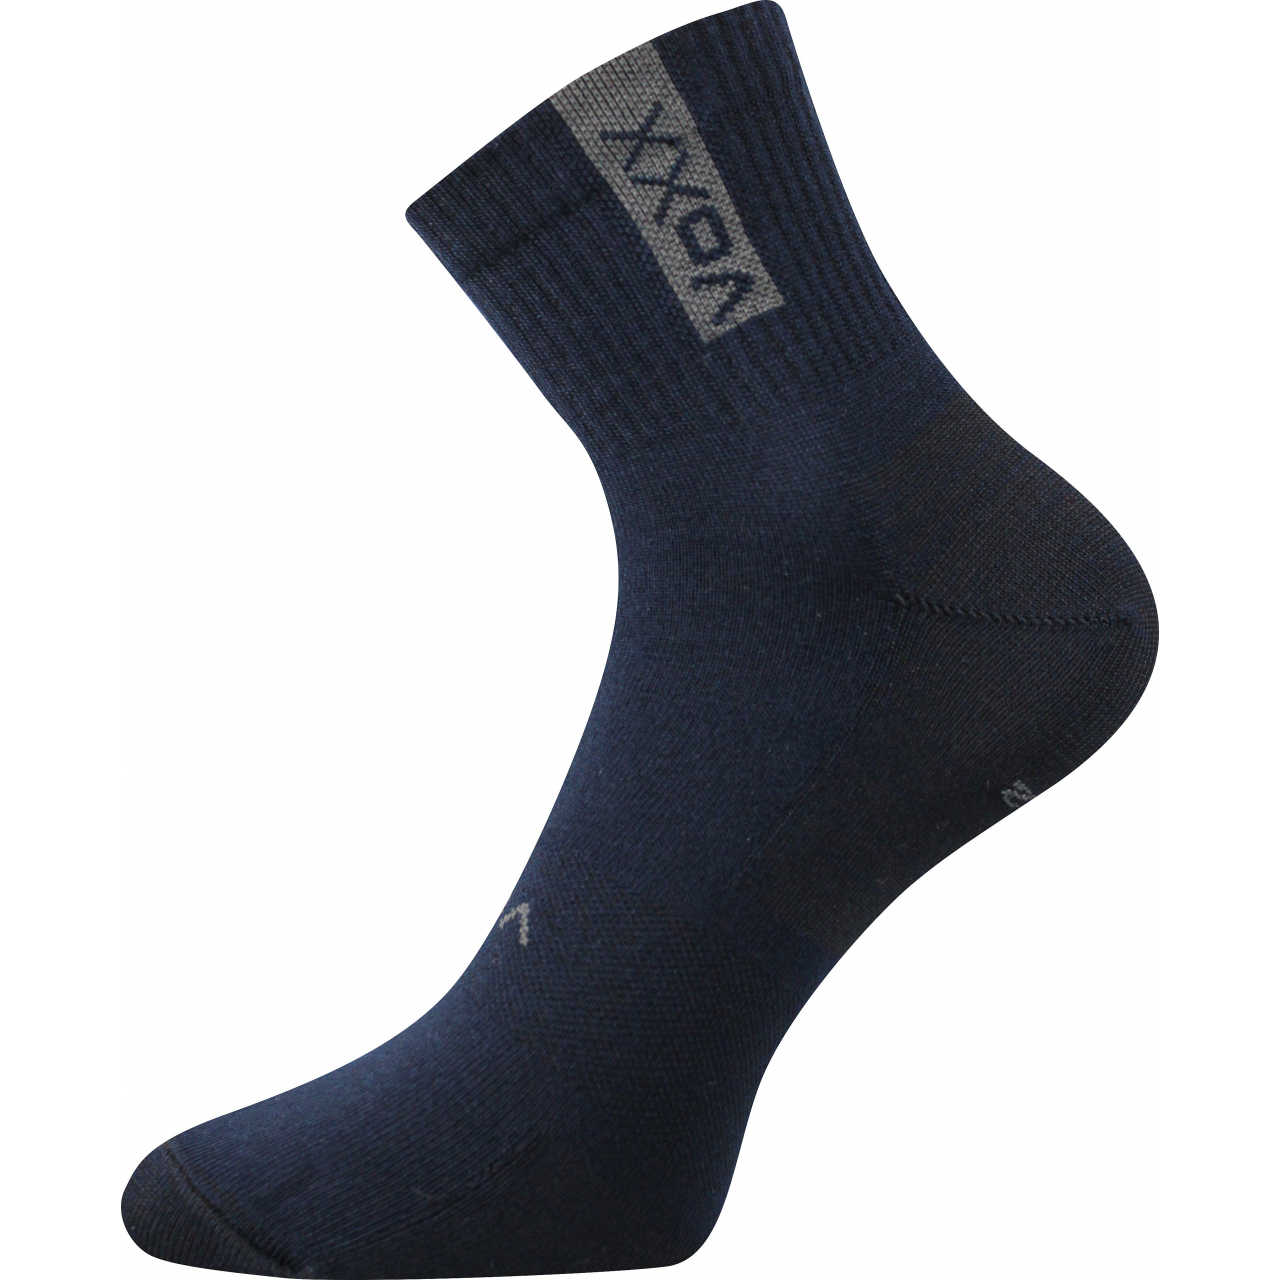 Ponožky sportovní unisex Voxx Brox - tmavě modré, 43-46